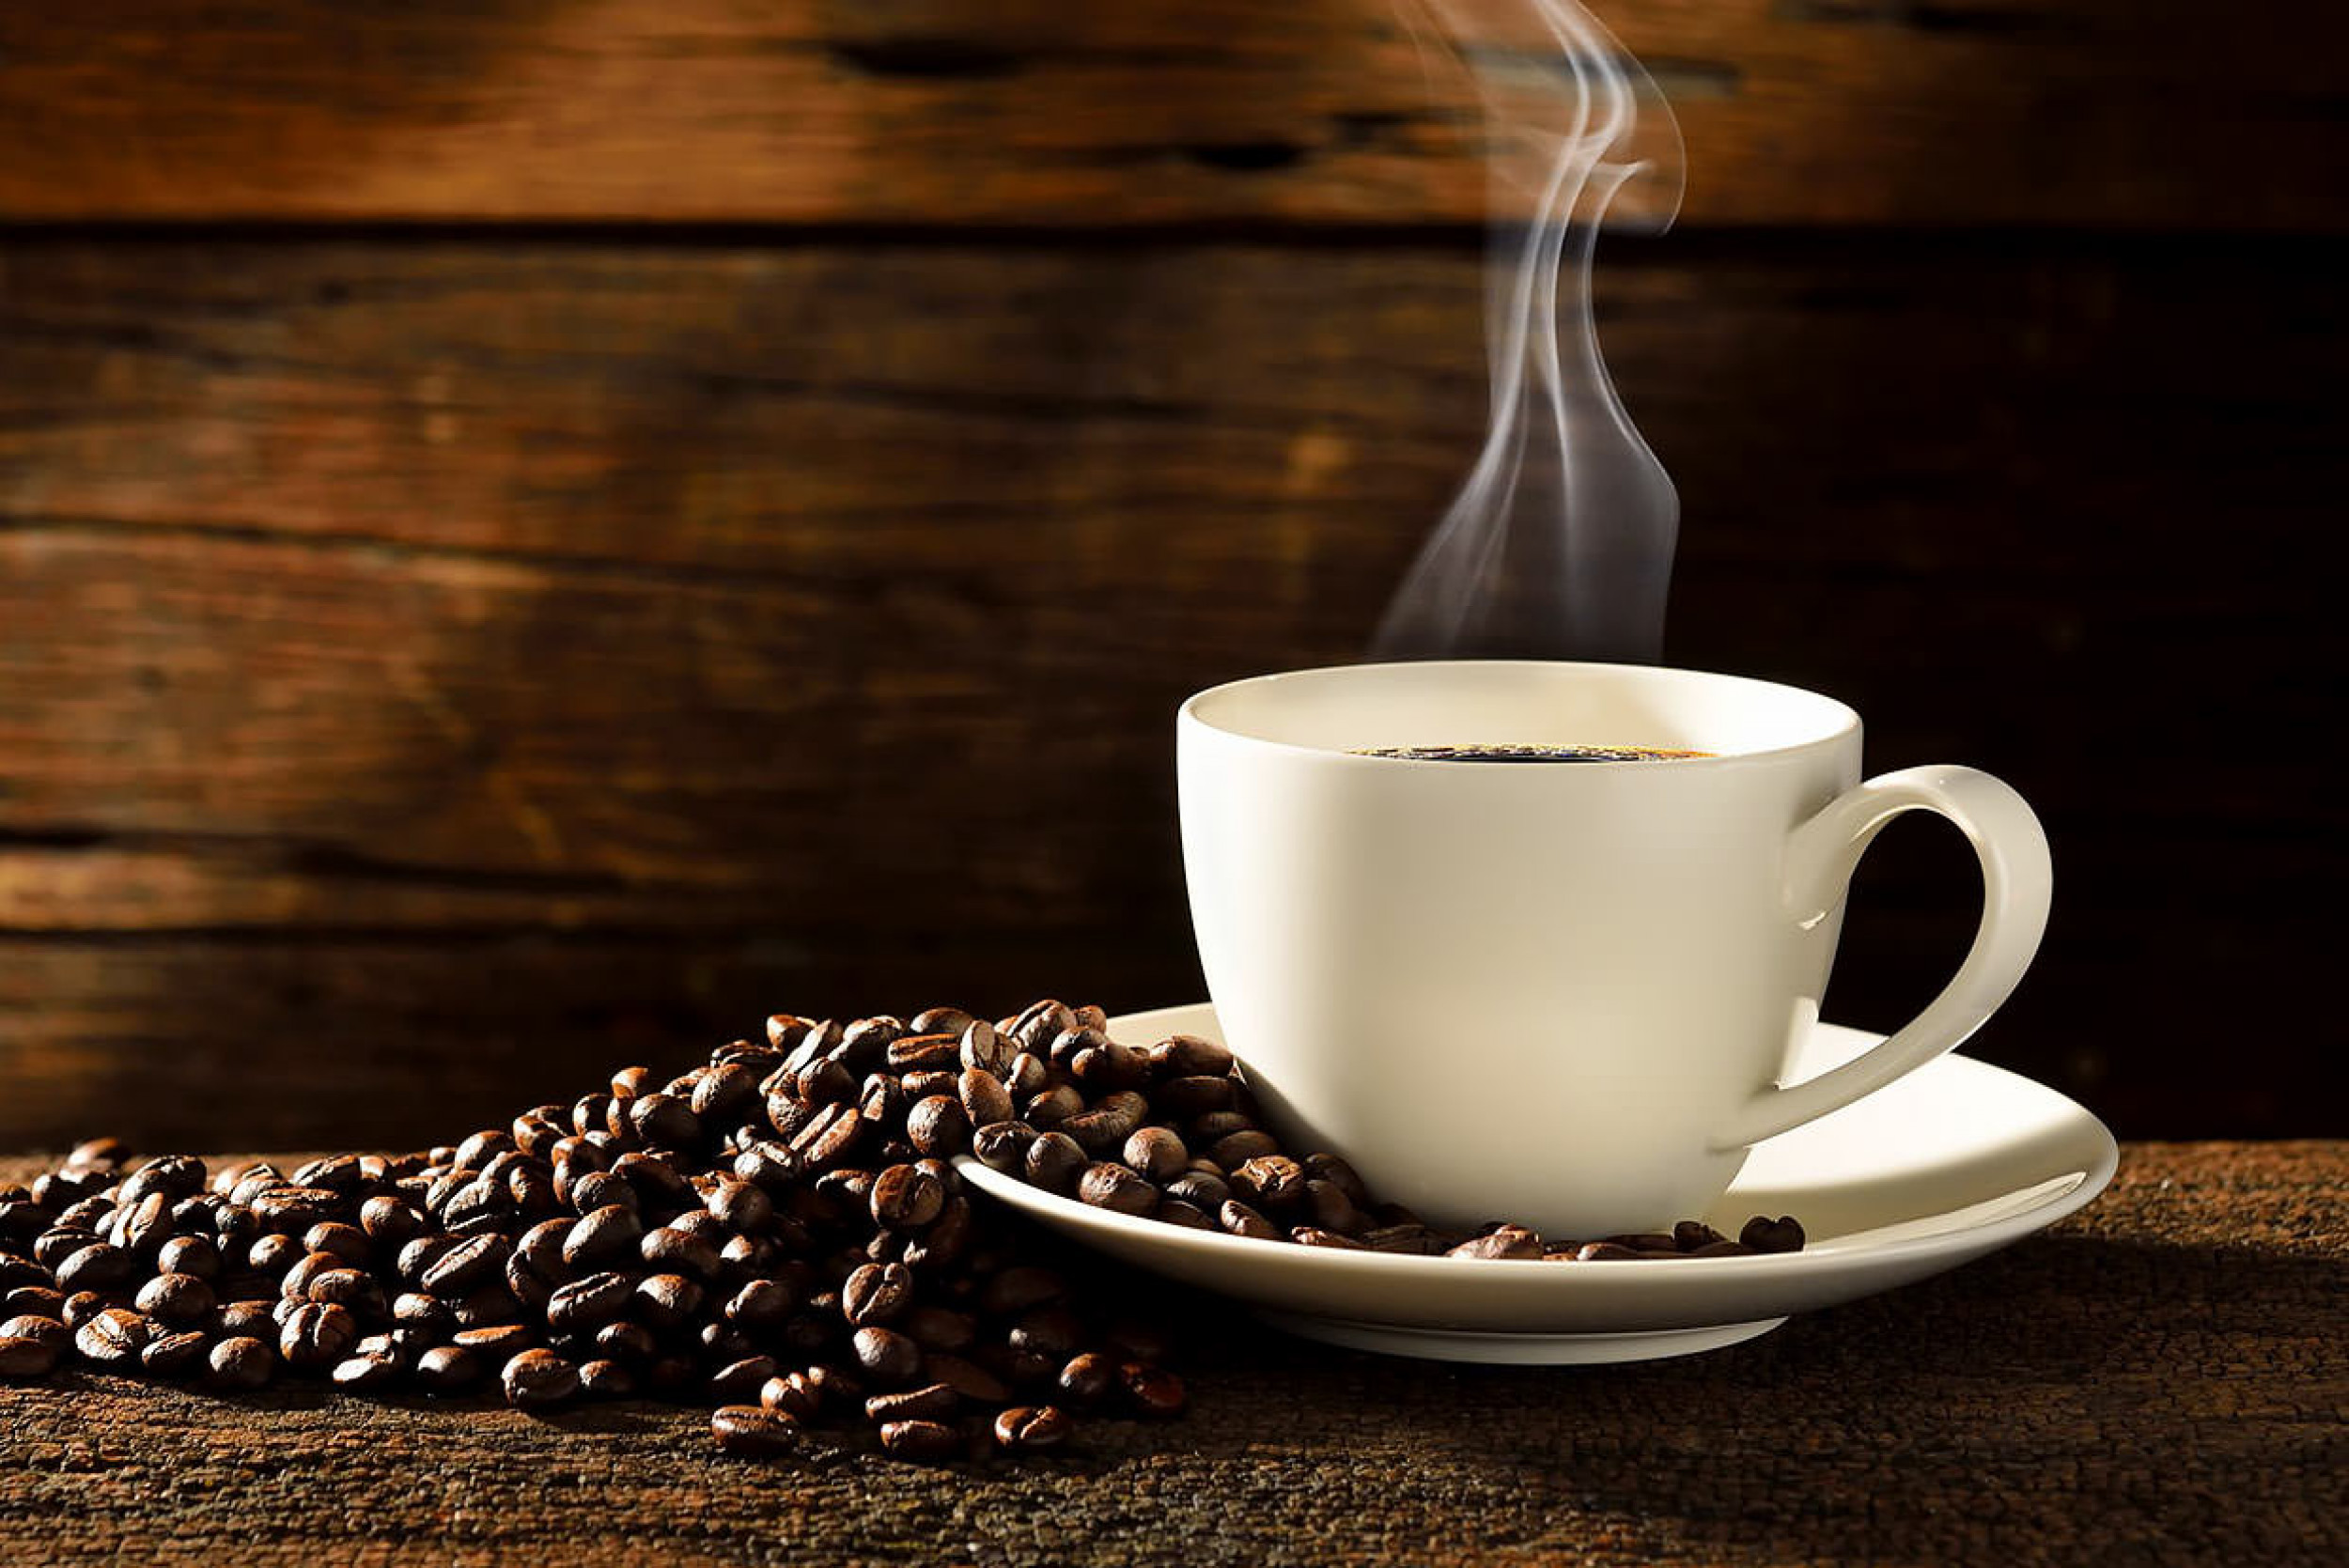 Hozzád melyik kávé illik a legjobban? | Cool.hu